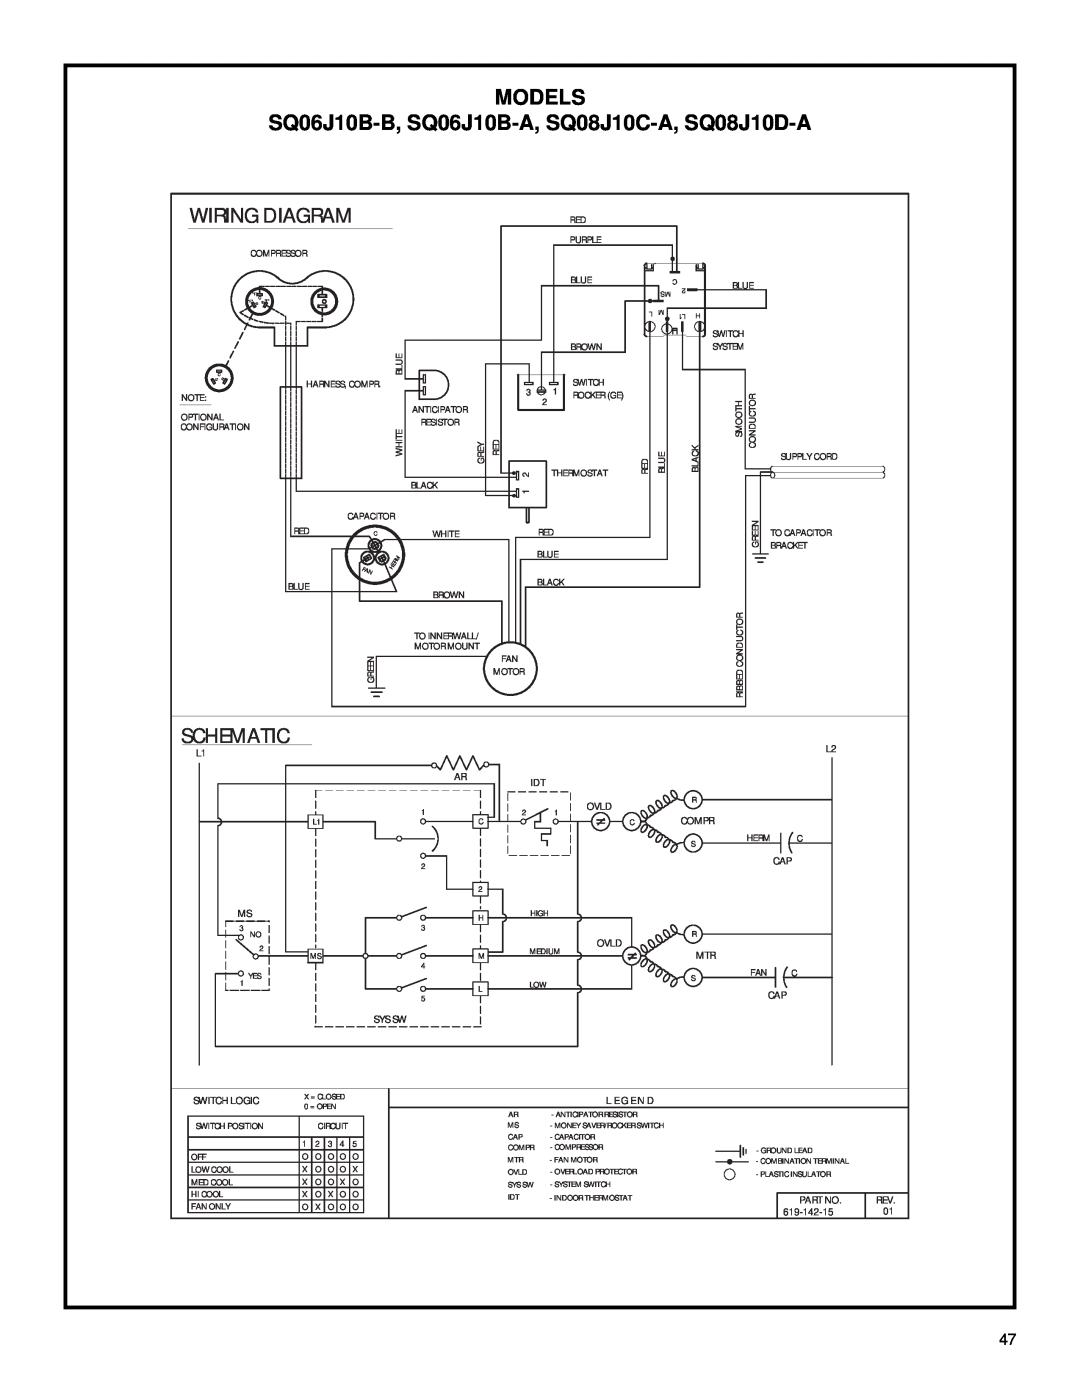 Friedrich 2003 service manual Models, SQ06J10B-B, SQ06J10B-A, SQ08J10C-A, SQ08J10D-A, Wiring Diagram, Schematic 